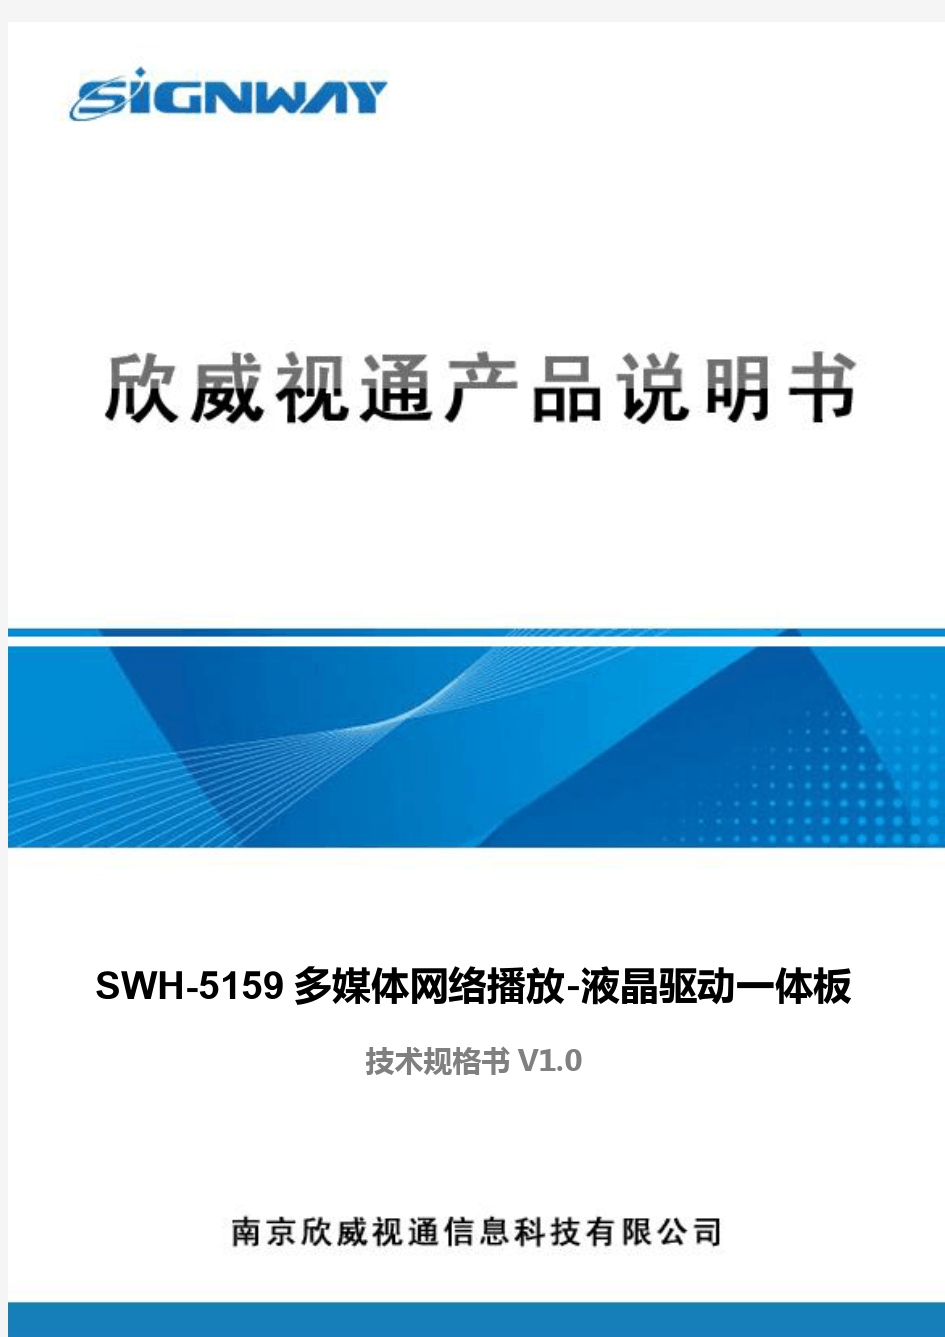 欣威视通SWH-5159 多媒体网络播放-液晶驱动一体板_技术规格书_V1.0